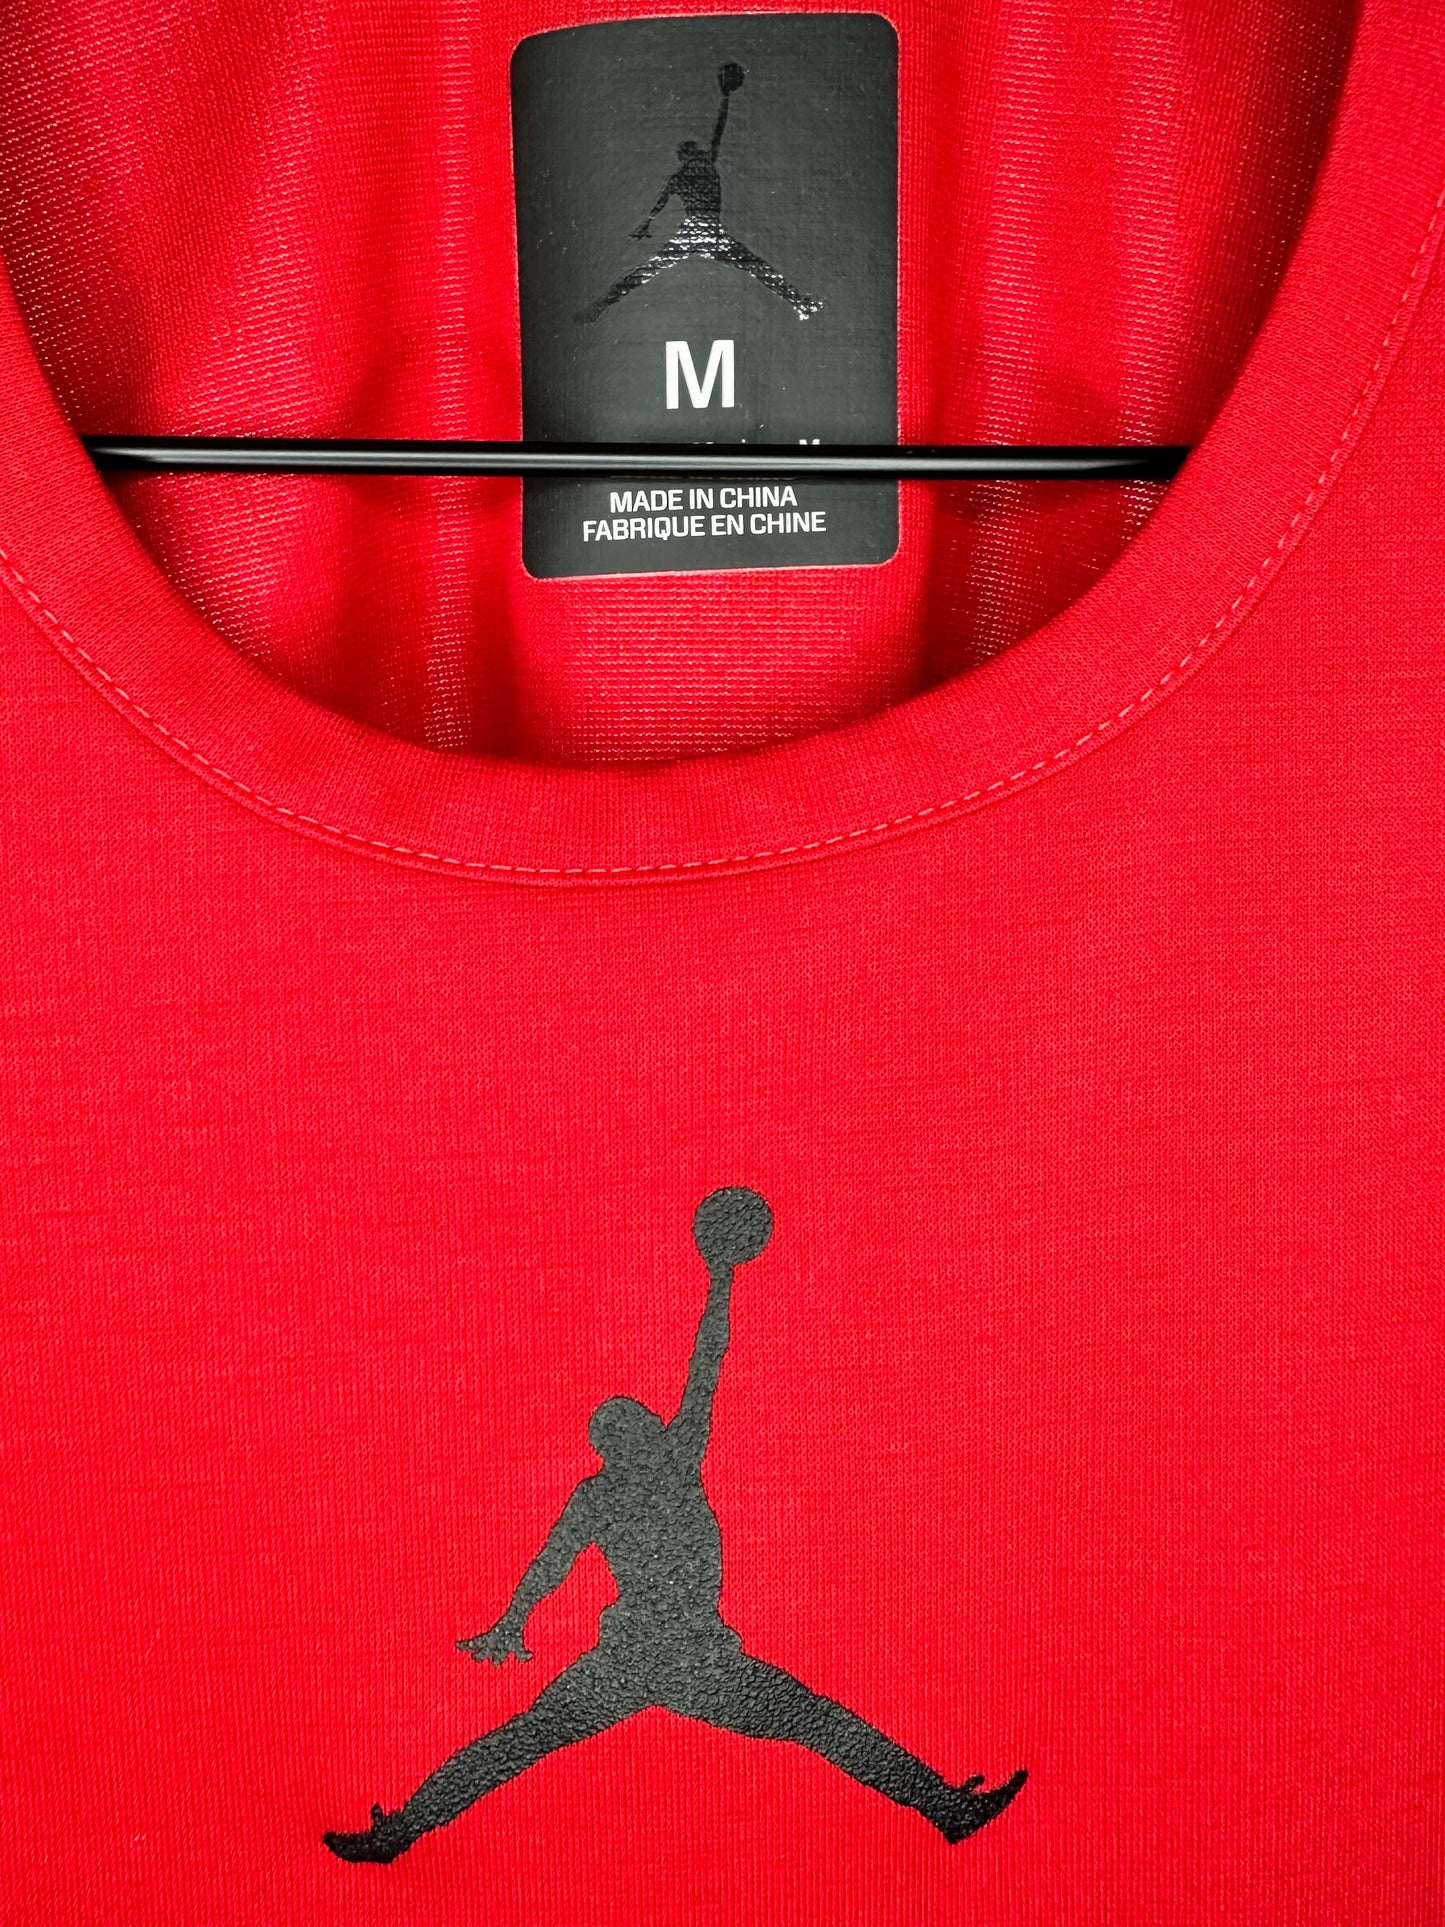 Red Gym Shirt By Jordan